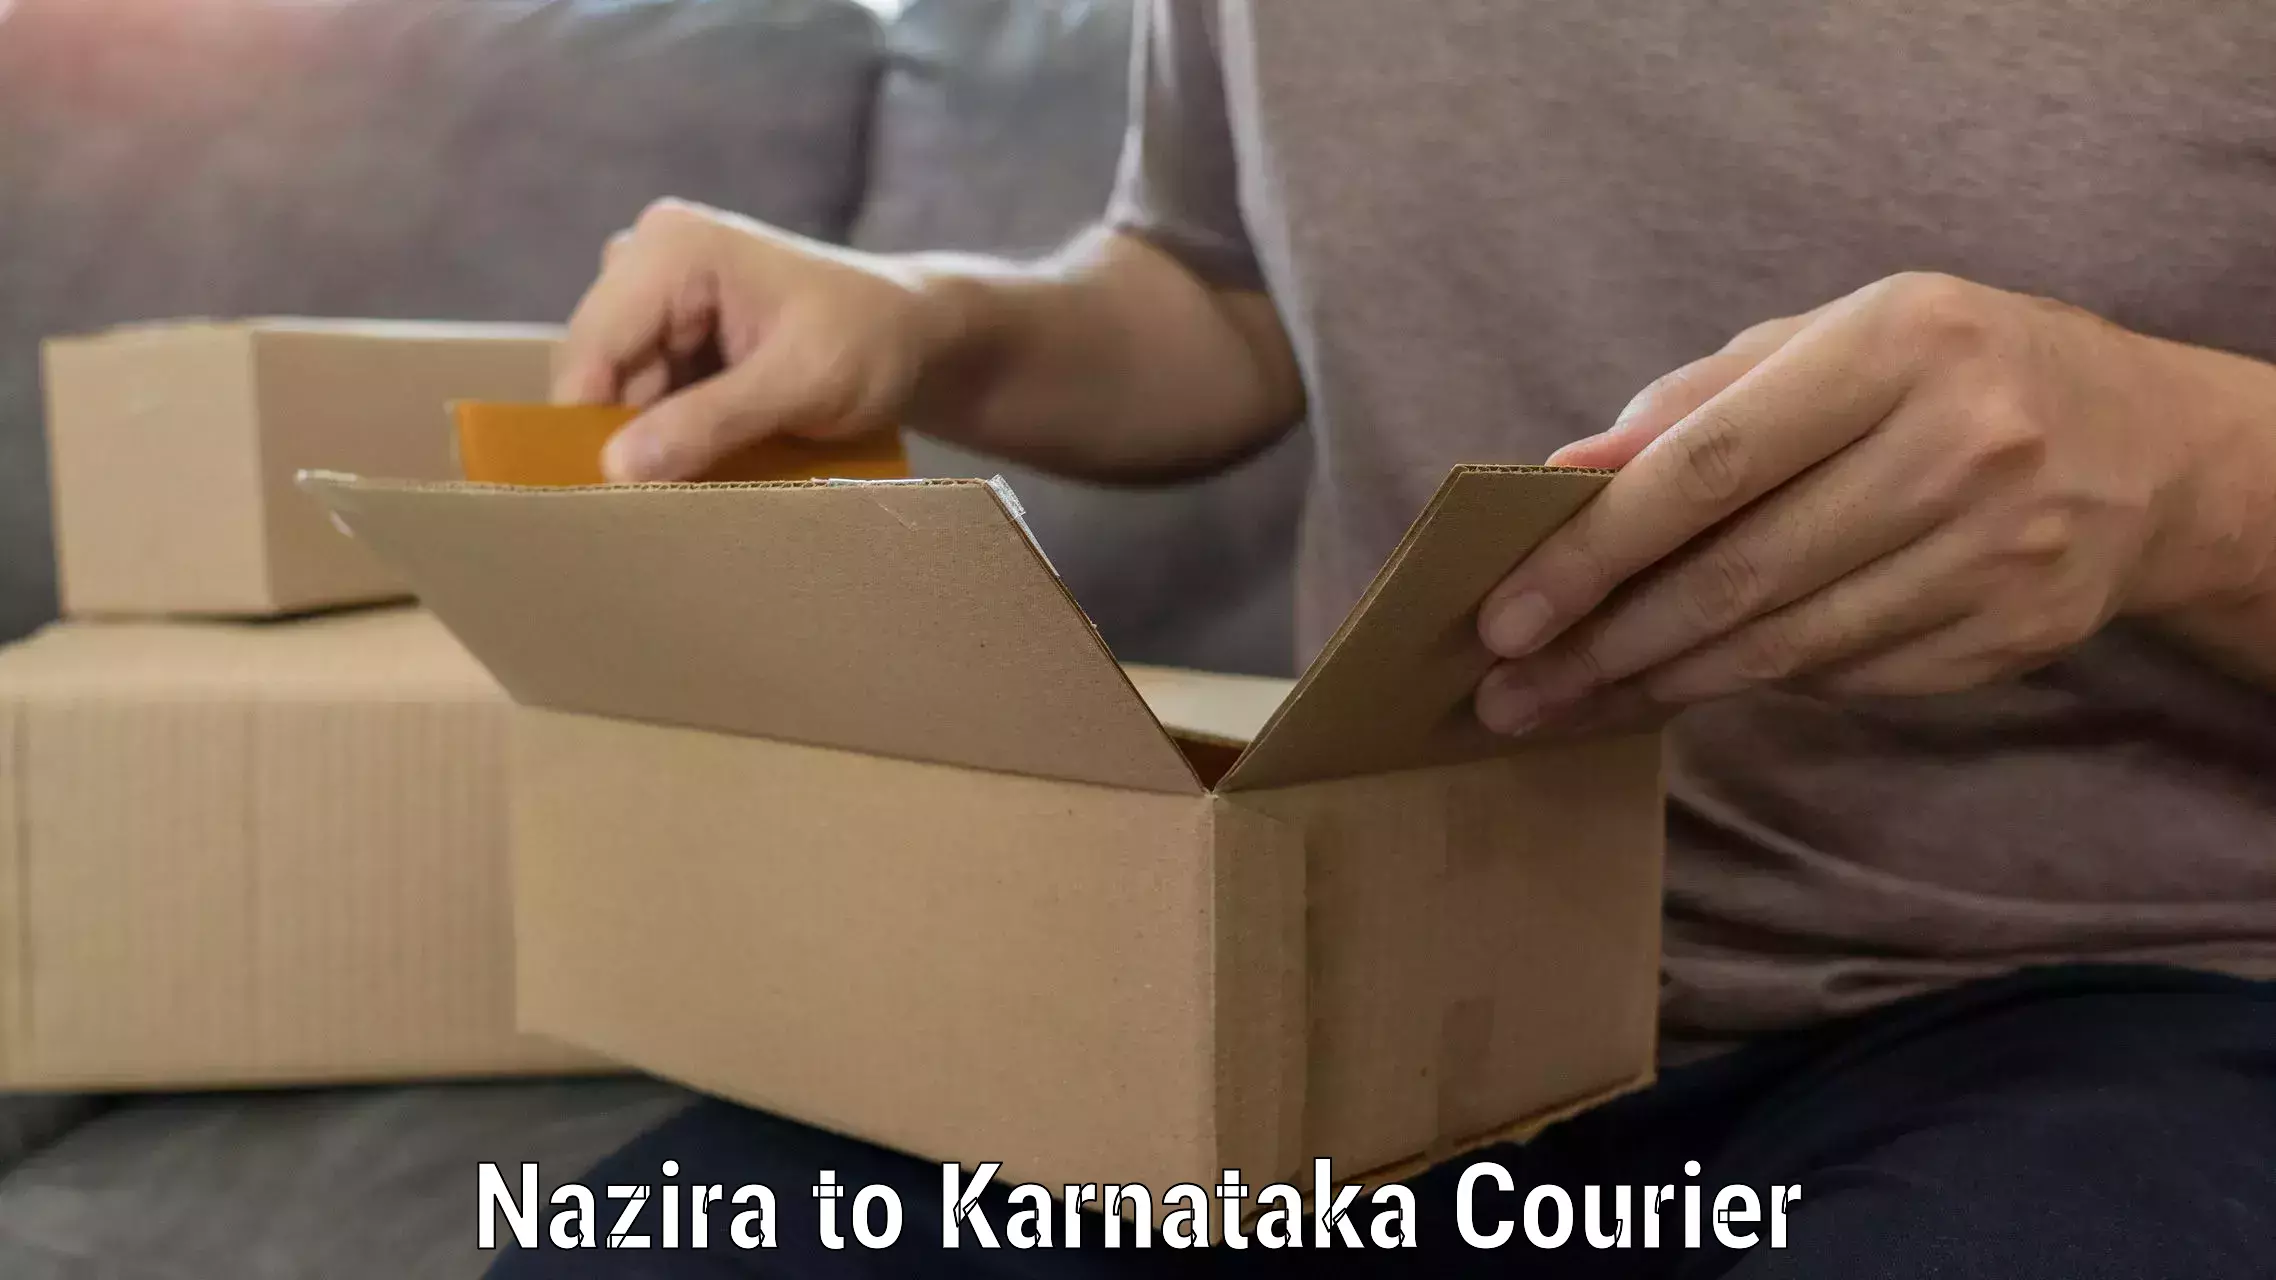 Efficient packing and moving Nazira to Karnataka